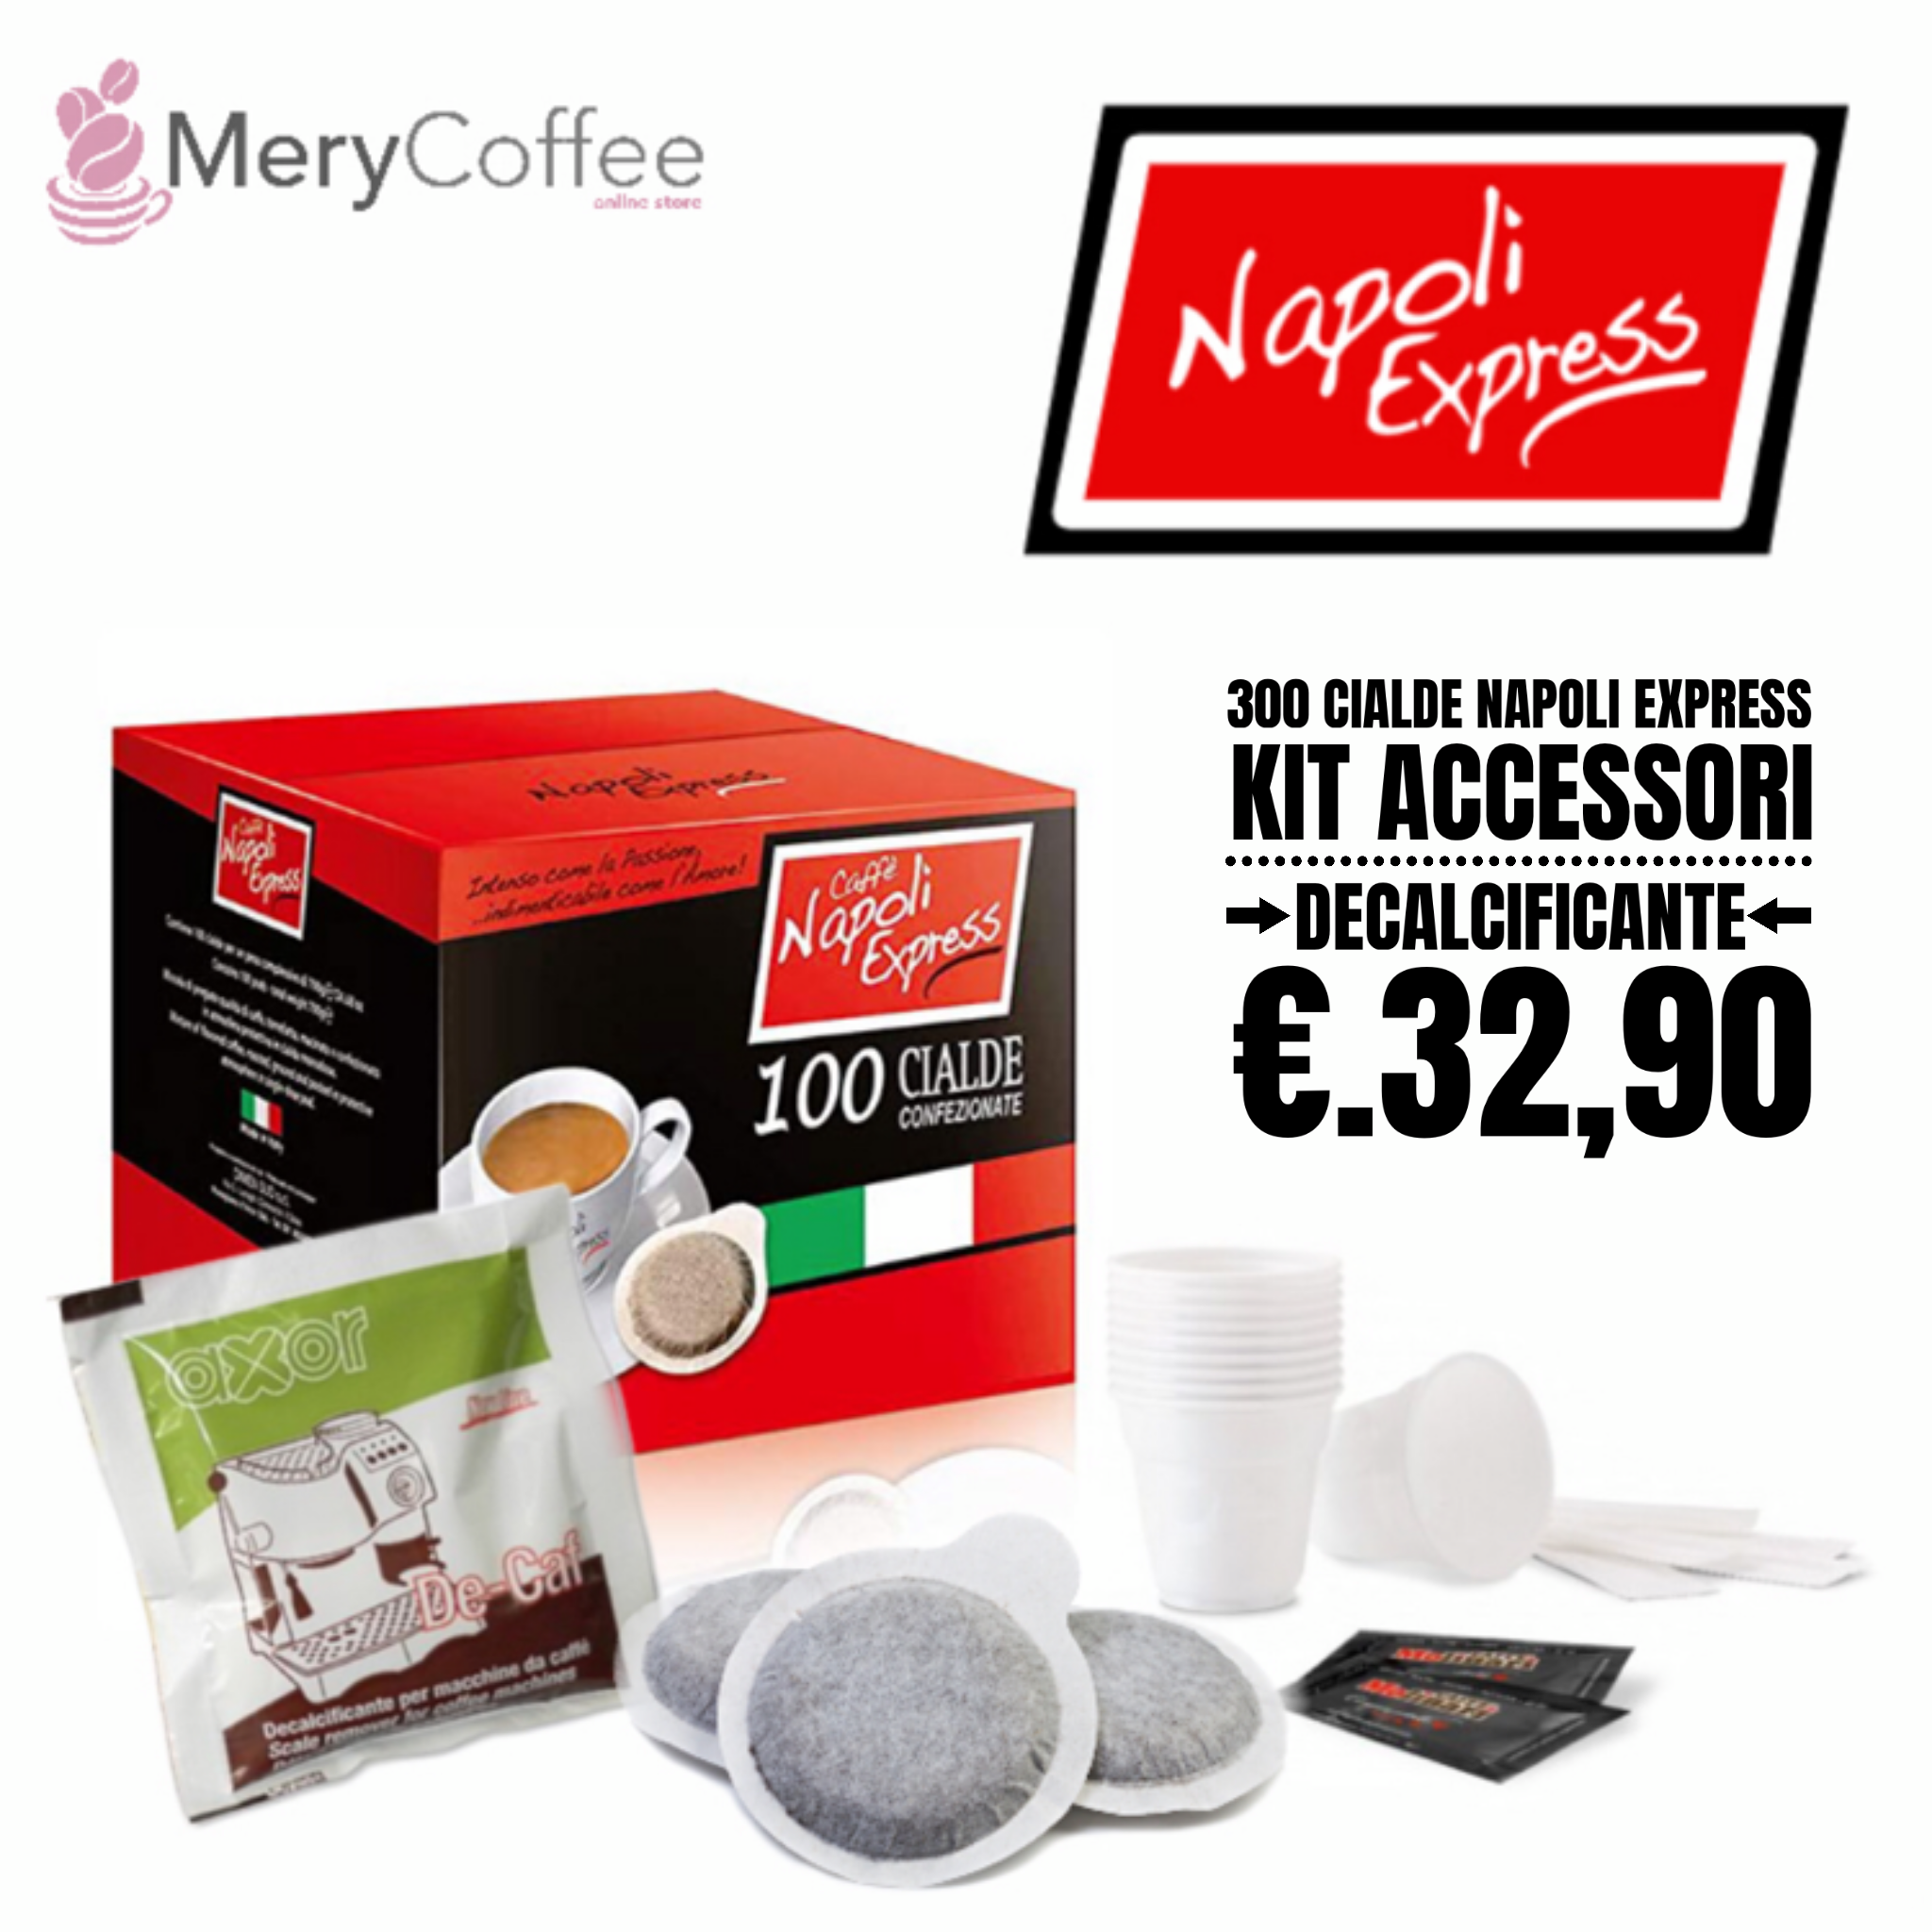 300 cialde napoli express + kit accessori + decalcificante - MeryCoffee